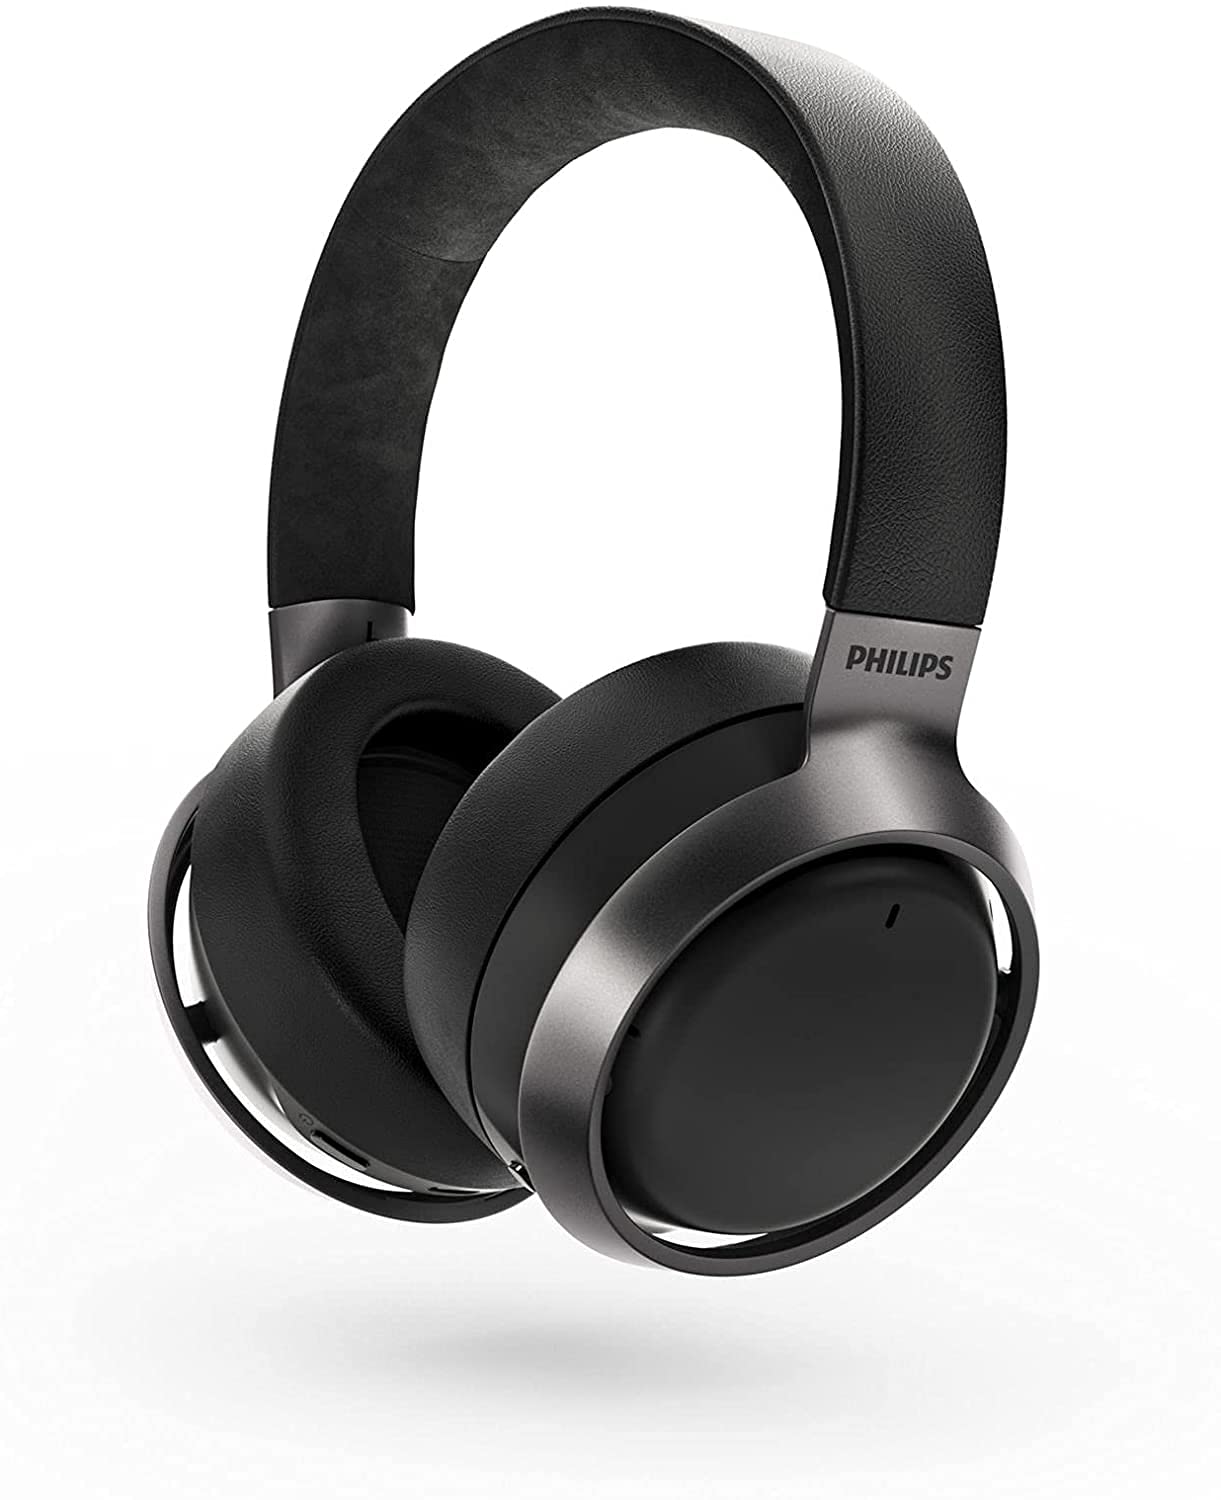 Philips Audio Fones de ouvido sem fio Philips Fidelio L3 Flagship Over-Ear com cancelamento de ruído ativo Pro+ (ANC) e conexão multiponto Bluetooth